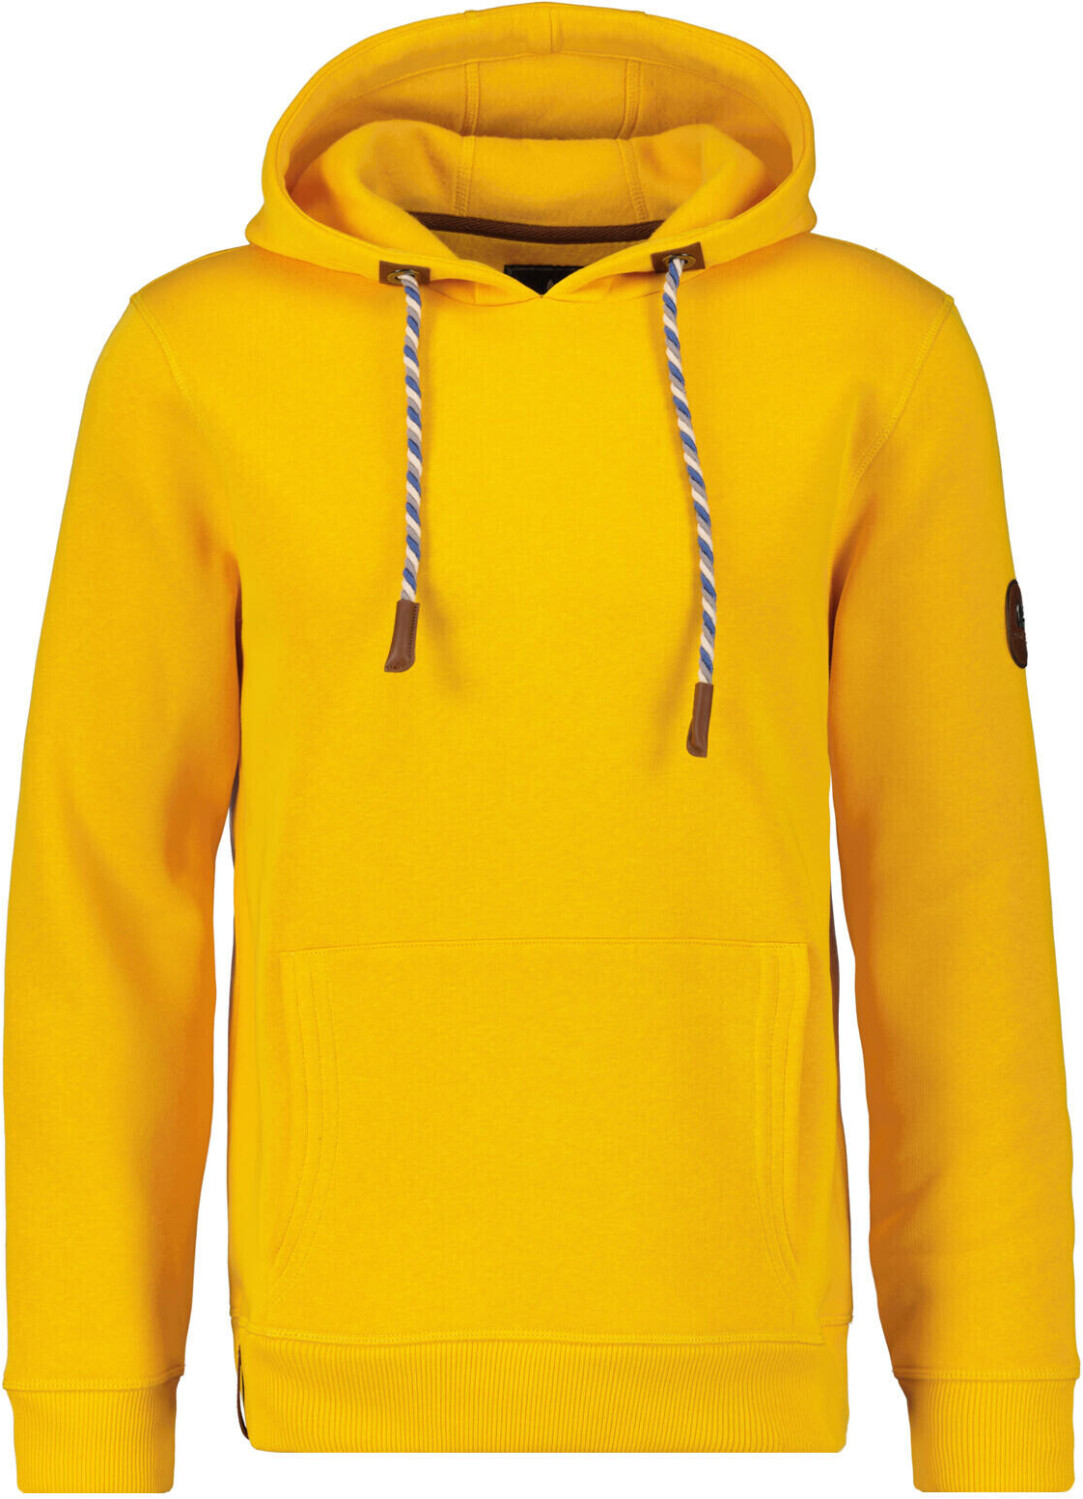 Ragman Hoody-Sweater (809096-055) mais ab 59,95 € | Preisvergleich bei